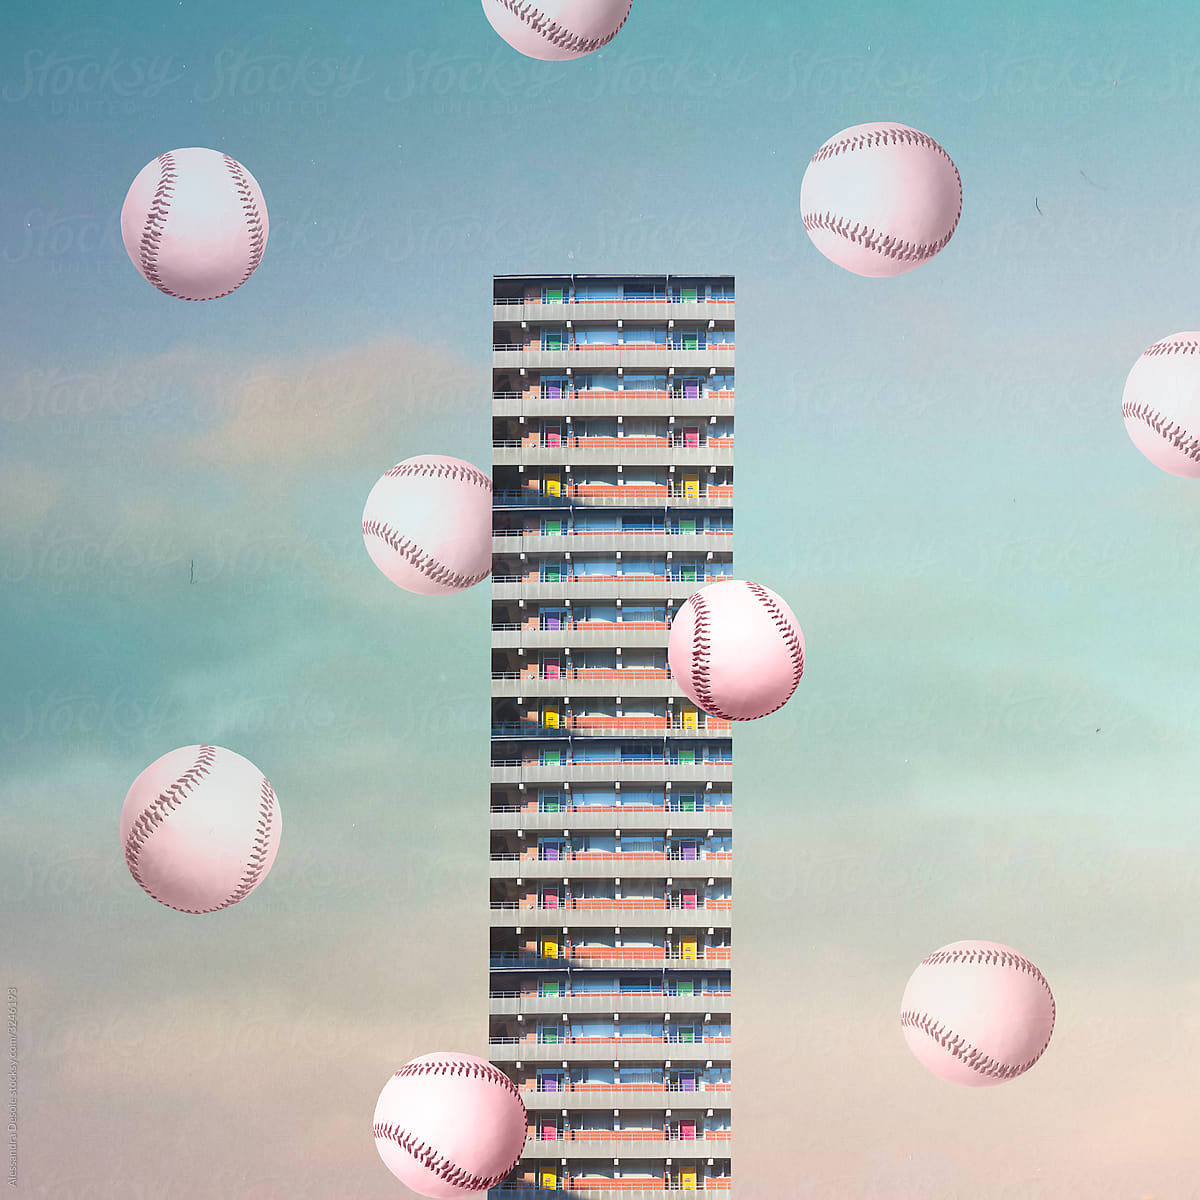 surreal graphic skyscraper